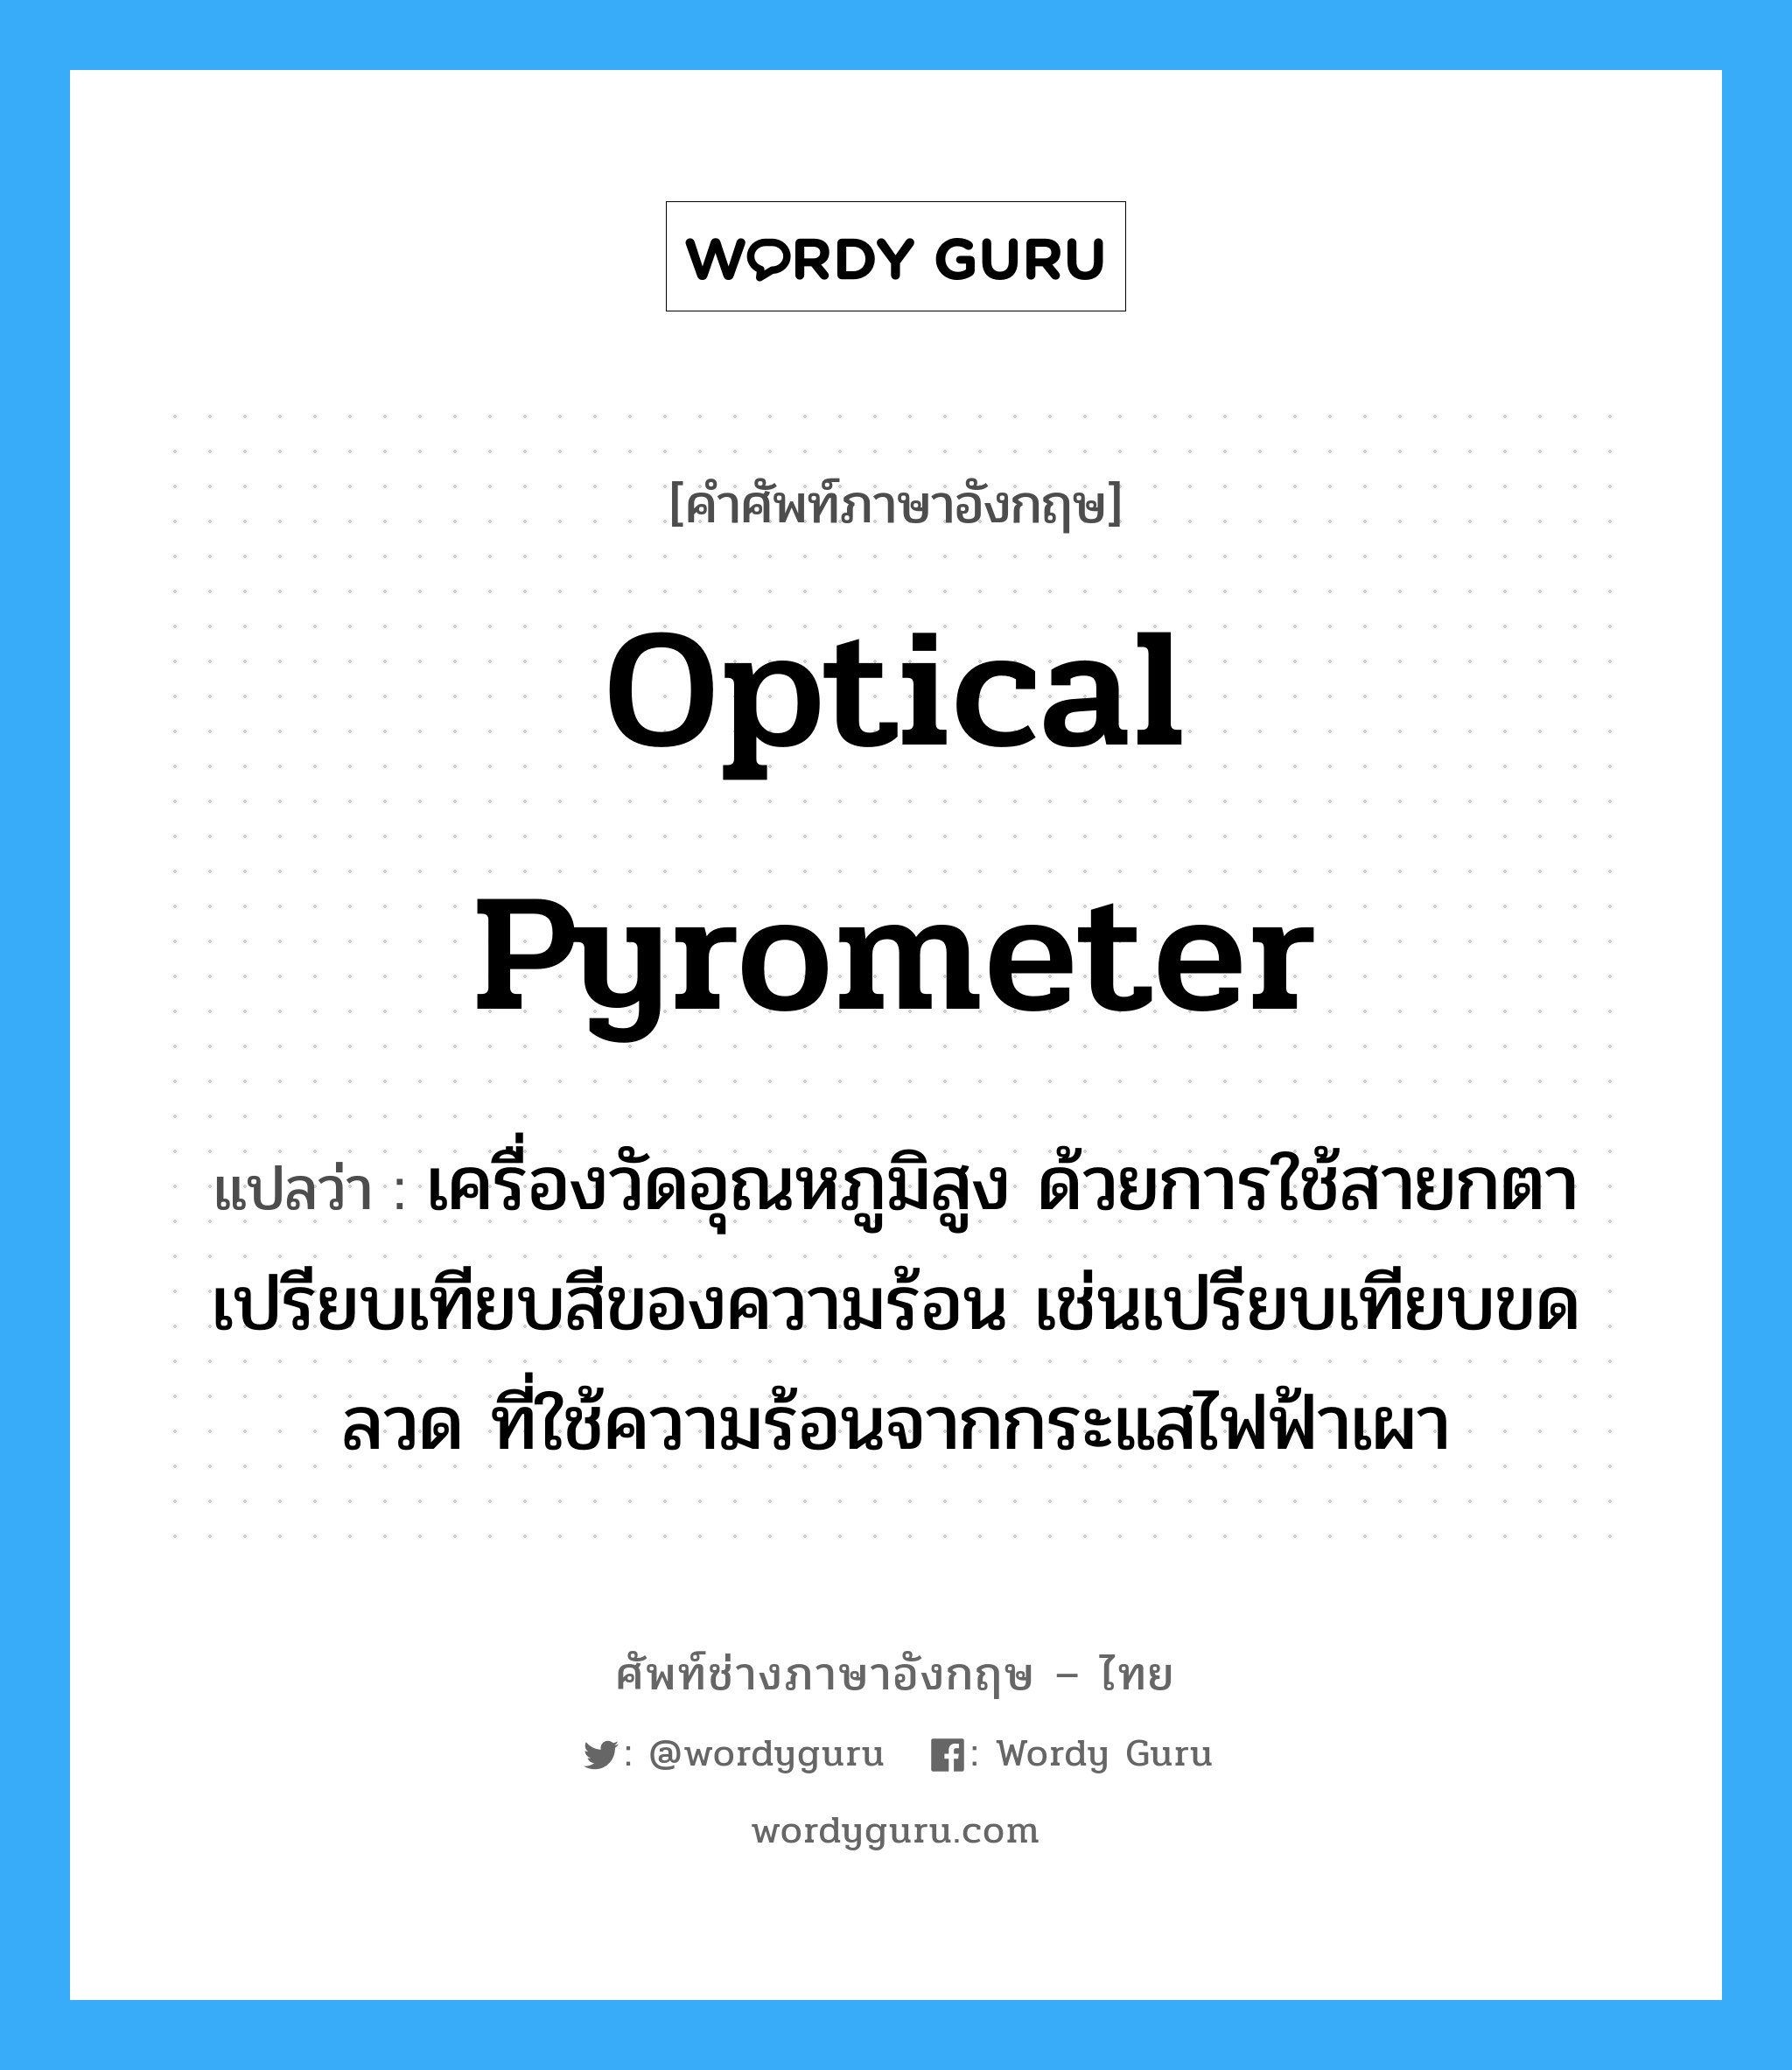 optical pyrometer แปลว่า?, คำศัพท์ช่างภาษาอังกฤษ - ไทย optical pyrometer คำศัพท์ภาษาอังกฤษ optical pyrometer แปลว่า เครื่องวัดอุณหภูมิสูง ด้วยการใช้สายกตาเปรียบเทียบสีของความร้อน เช่นเปรียบเทียบขดลวด ที่ใช้ความร้อนจากกระแสไฟฟ้าเผา